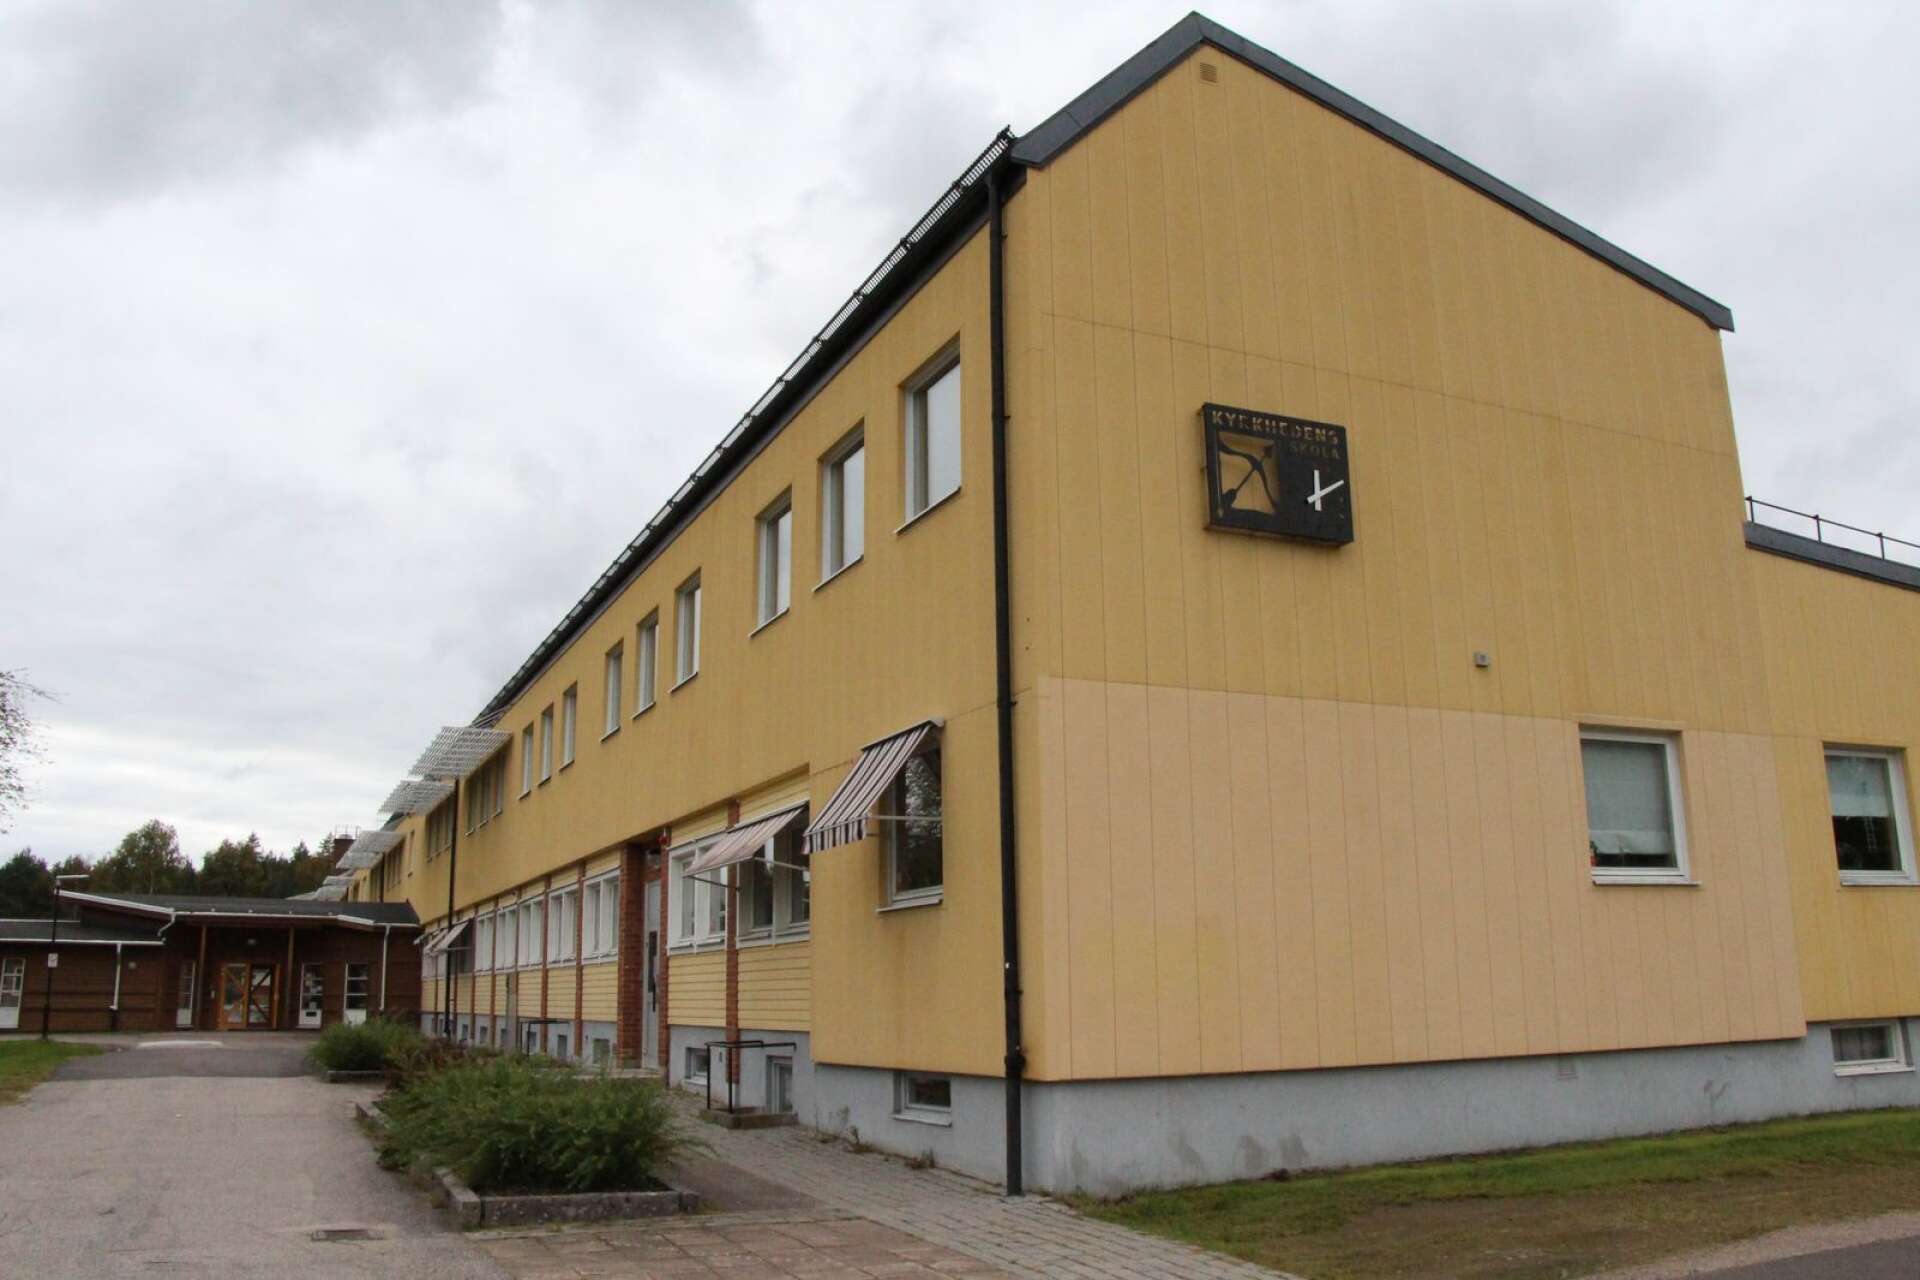 Kyrkhedens skola i Ekshärad har en del år på nacken och Oberoende realister ser gärna en helt ny skola här.